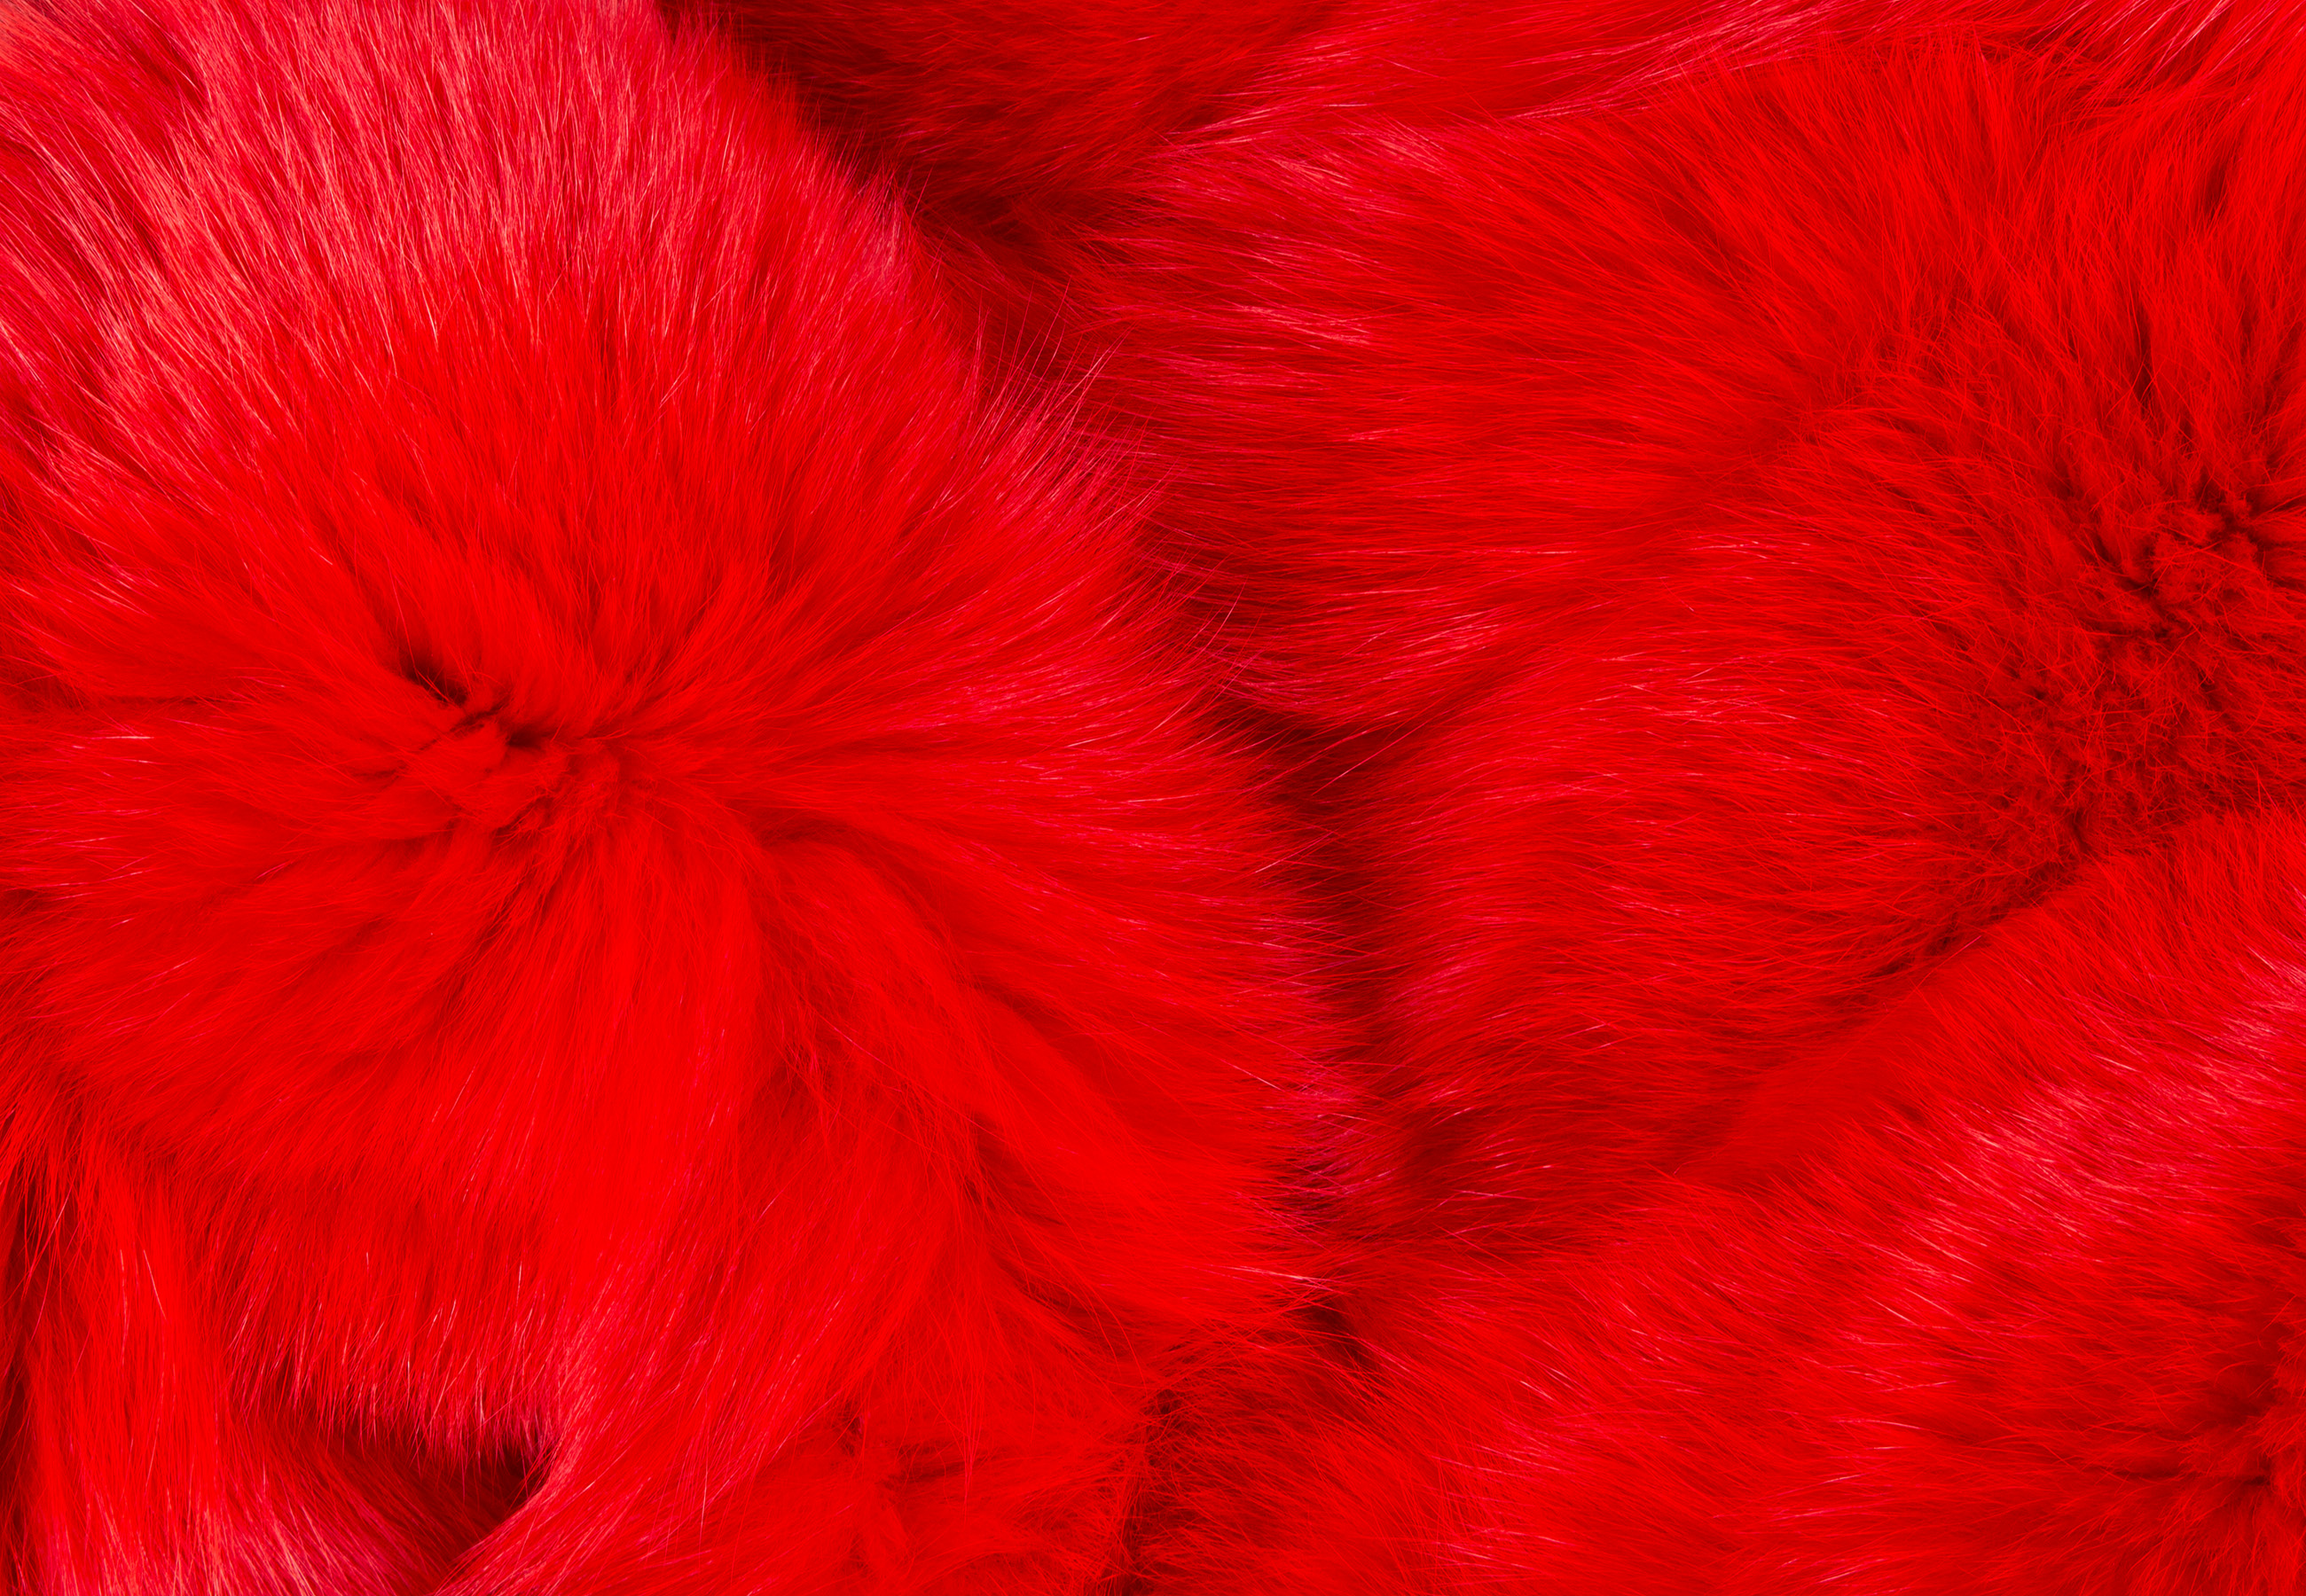 Shadow Fox Sides Blanket "Ferrari Red"